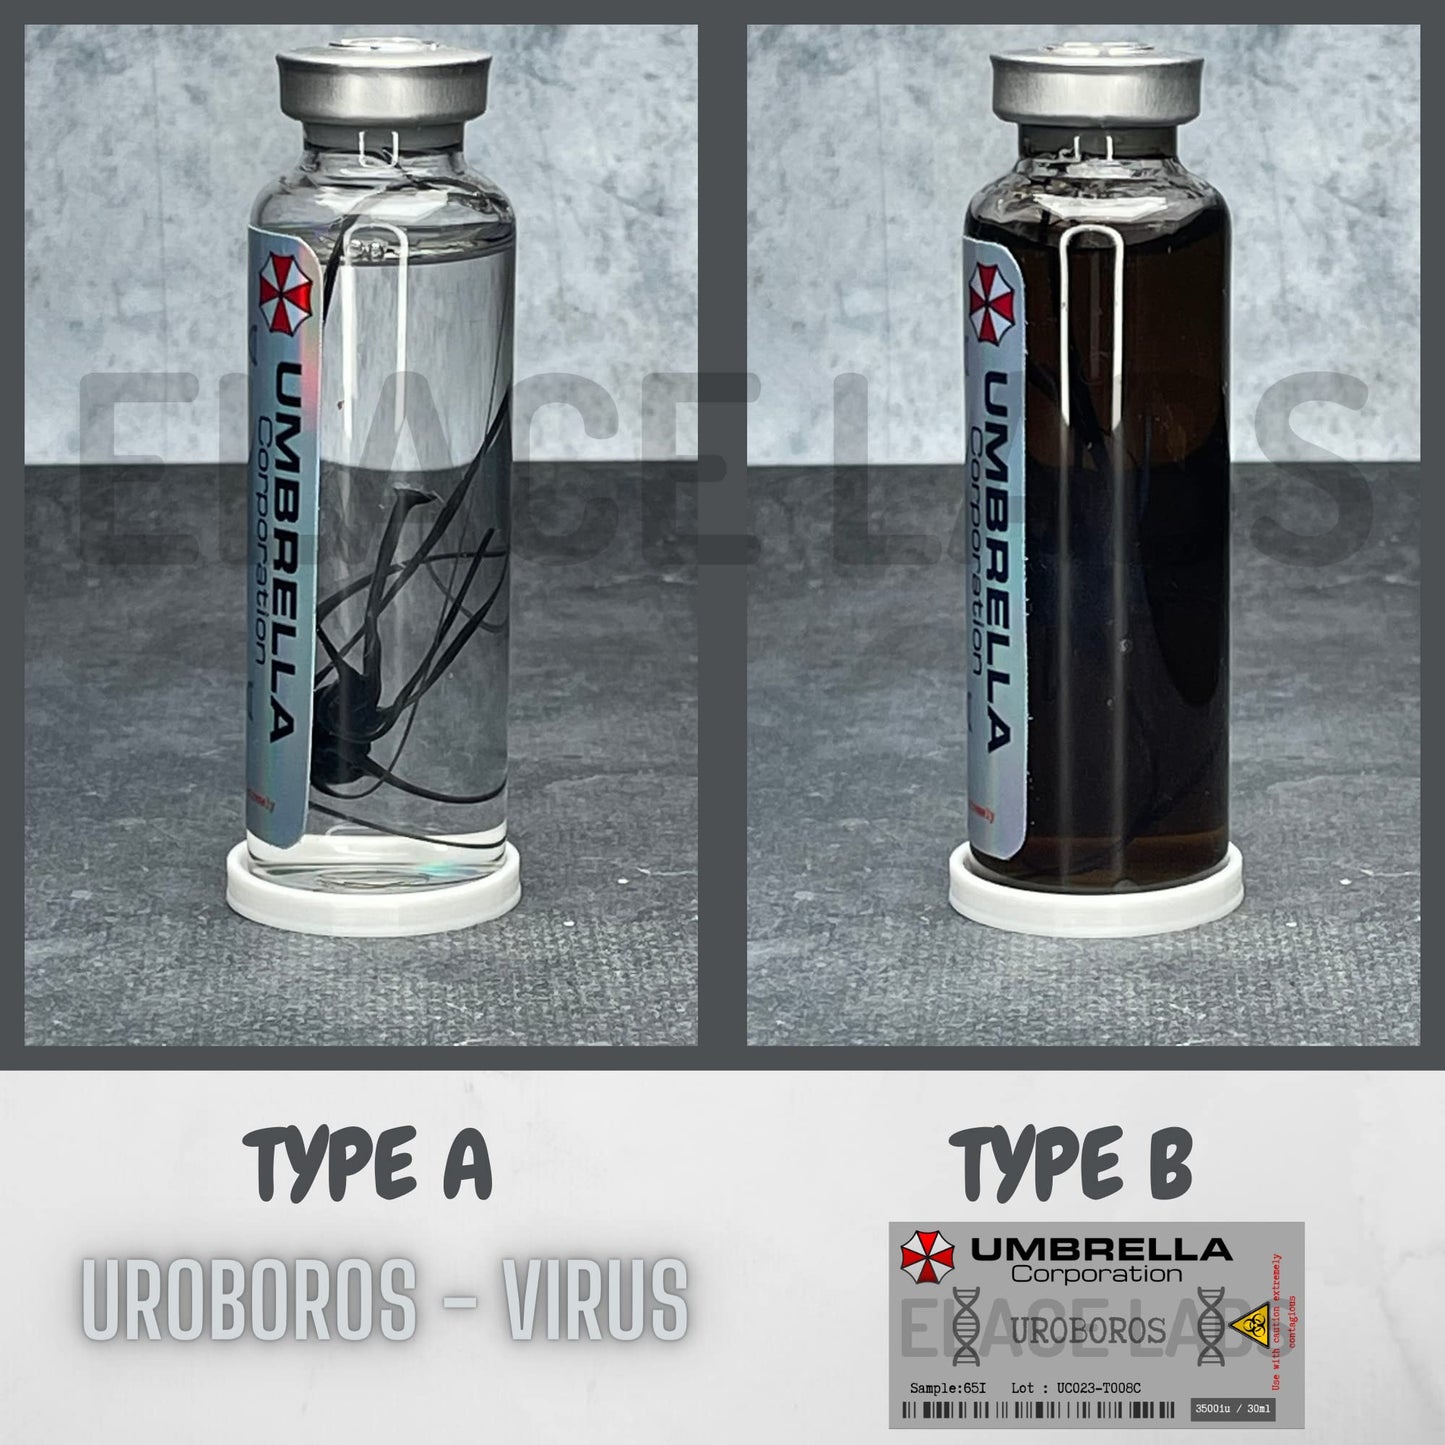 ELACE Fiole Virus 08 Uroboros Virus- Resident Evil Représentation d'un Virus pour Utilisation Fan Art Cosplay Collection